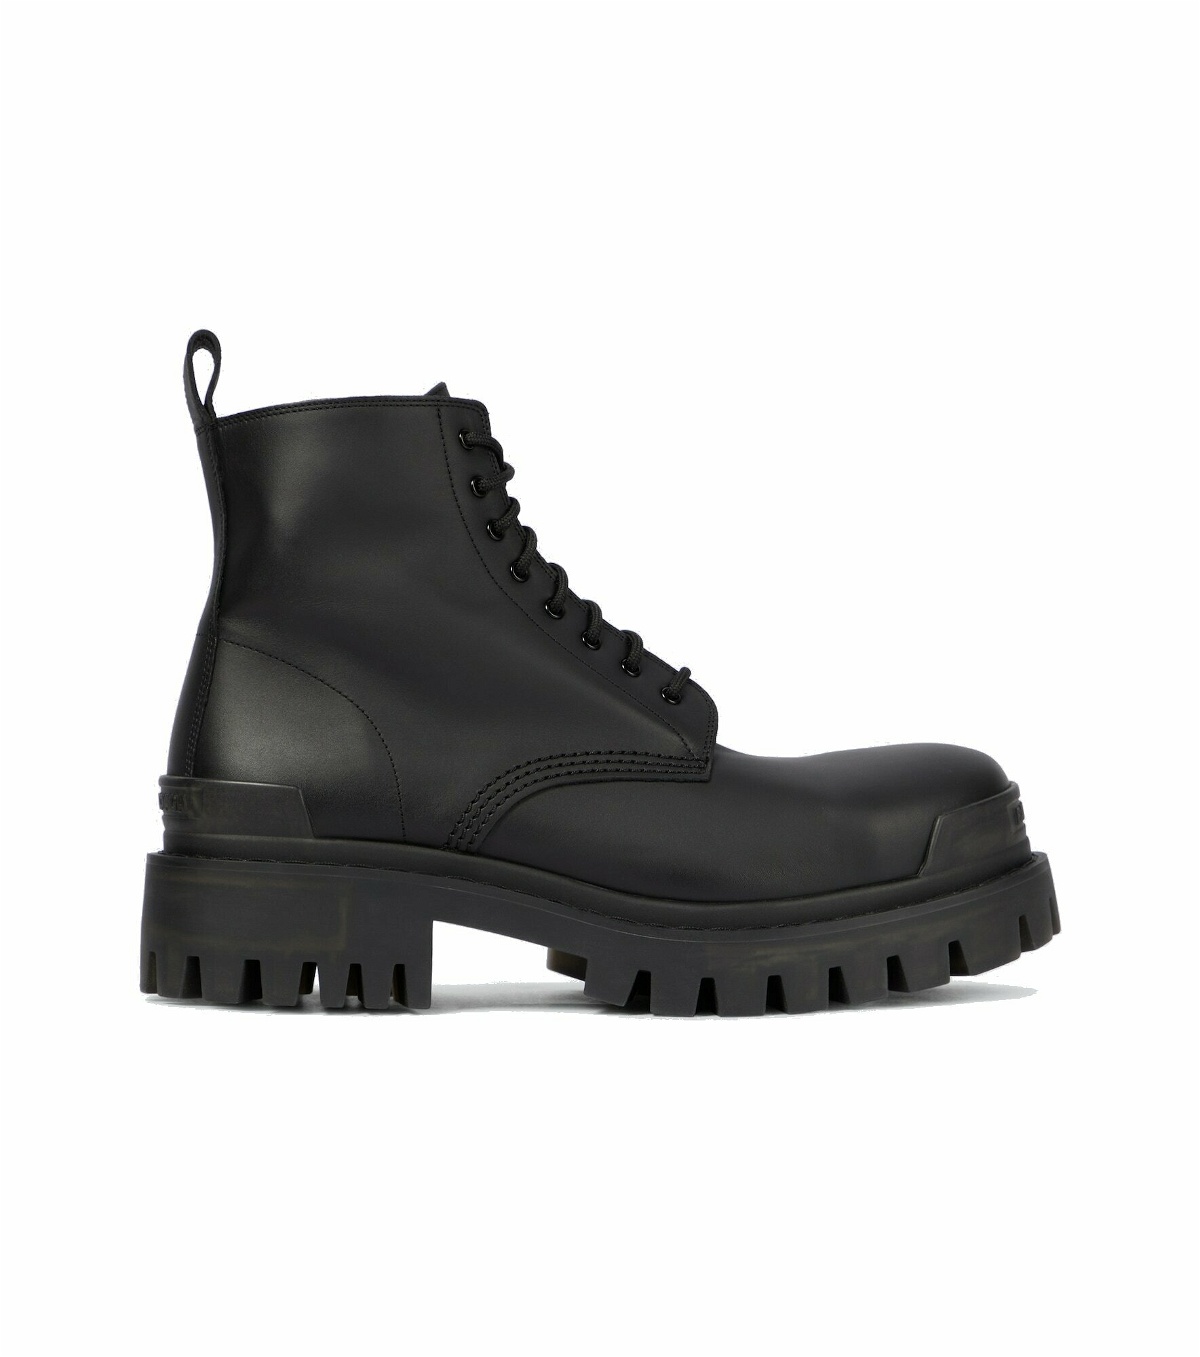 Balenciaga - Strike leather boots Balenciaga